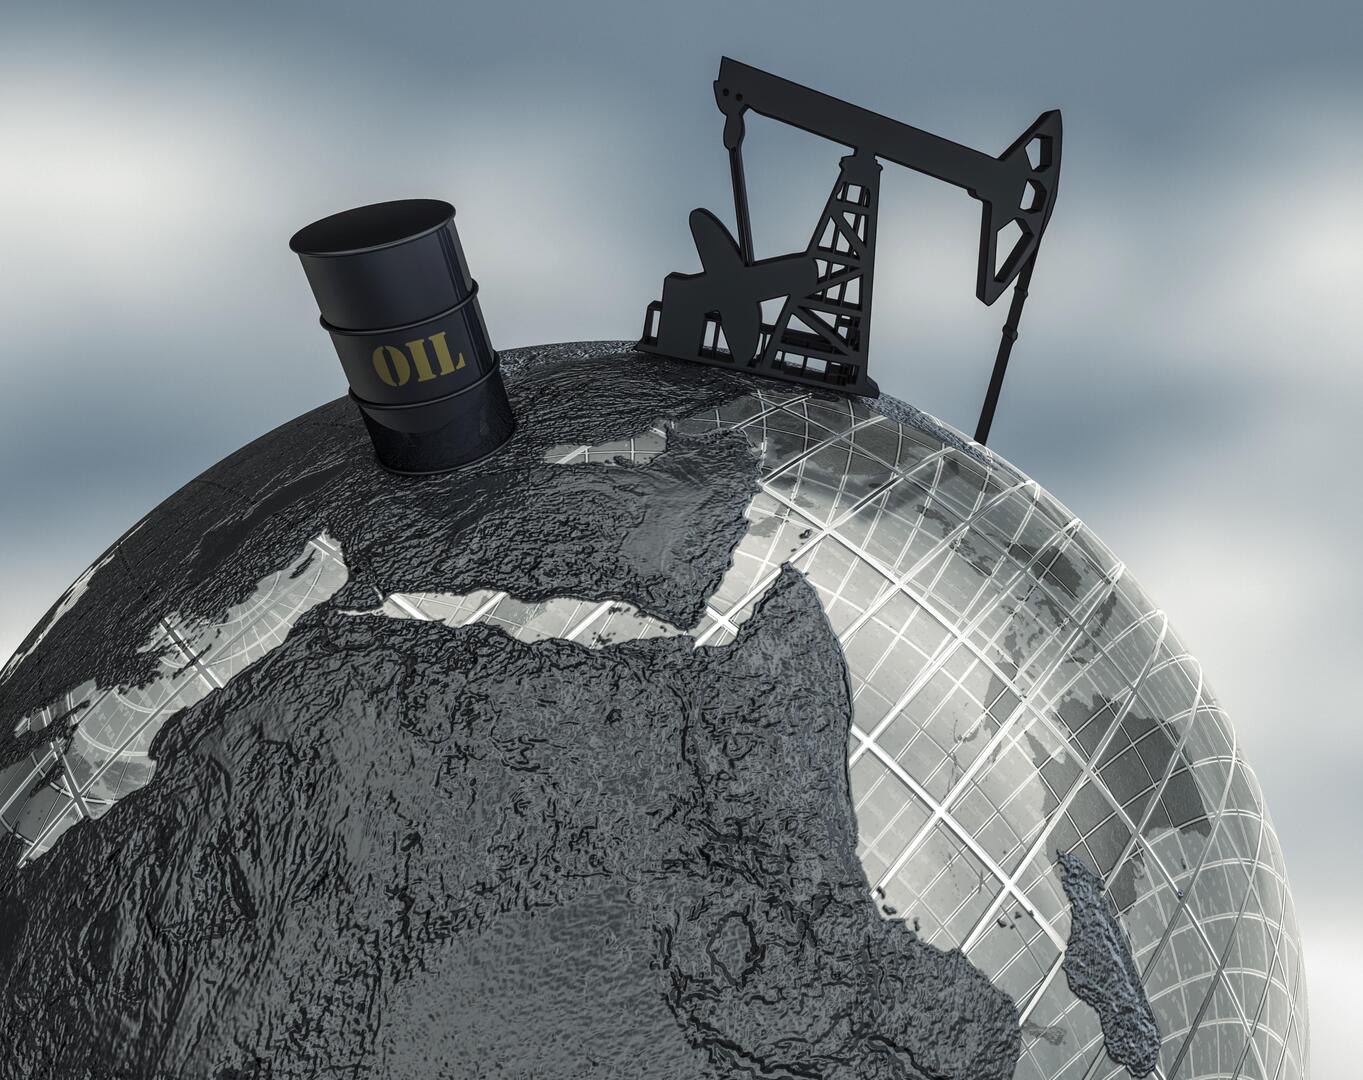 ارتفاع أسعار النفط وسط مخاوف حول الإمدادات